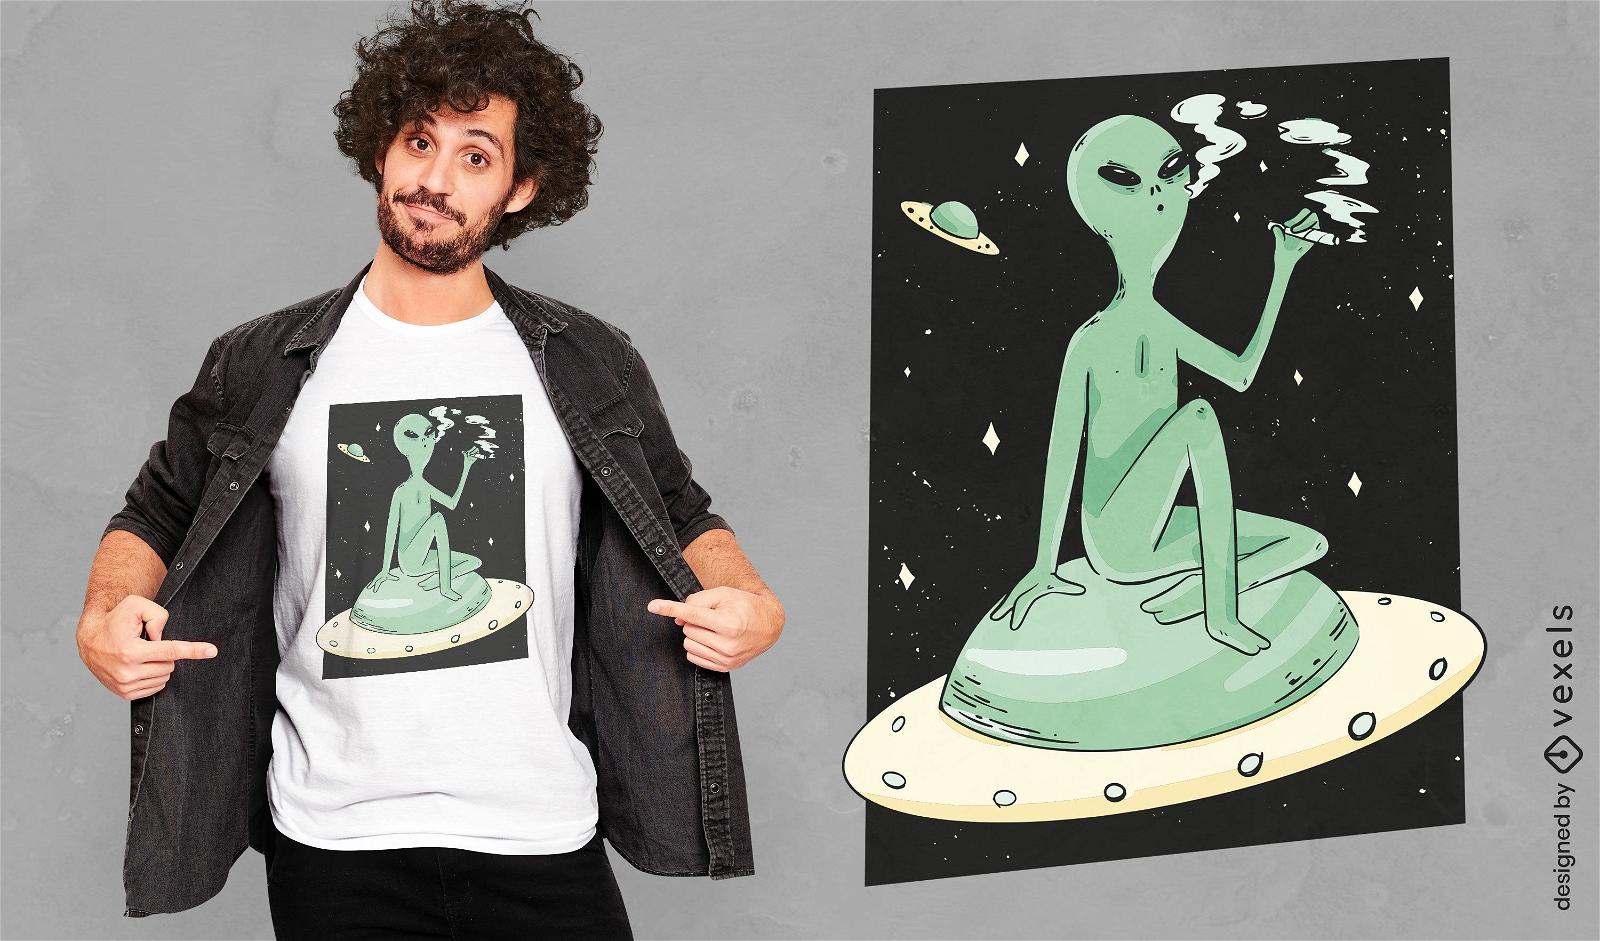 Dise?o de camiseta alien?gena fumando en el espacio.